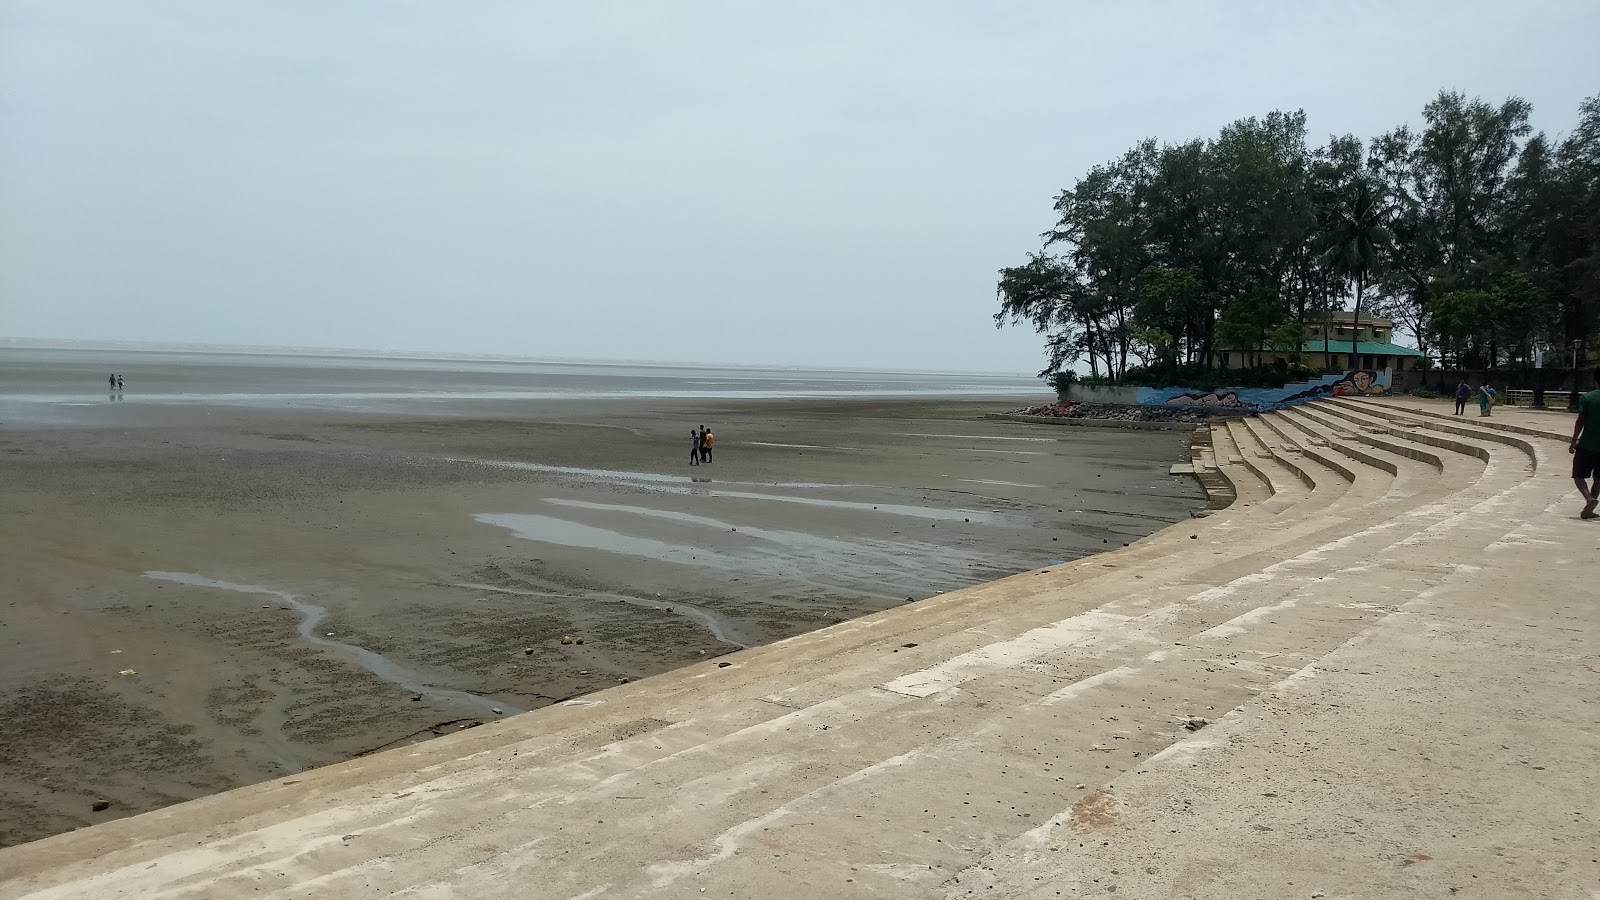 Fotografie cu Chandipur Beach cu o suprafață de apa turcoaz